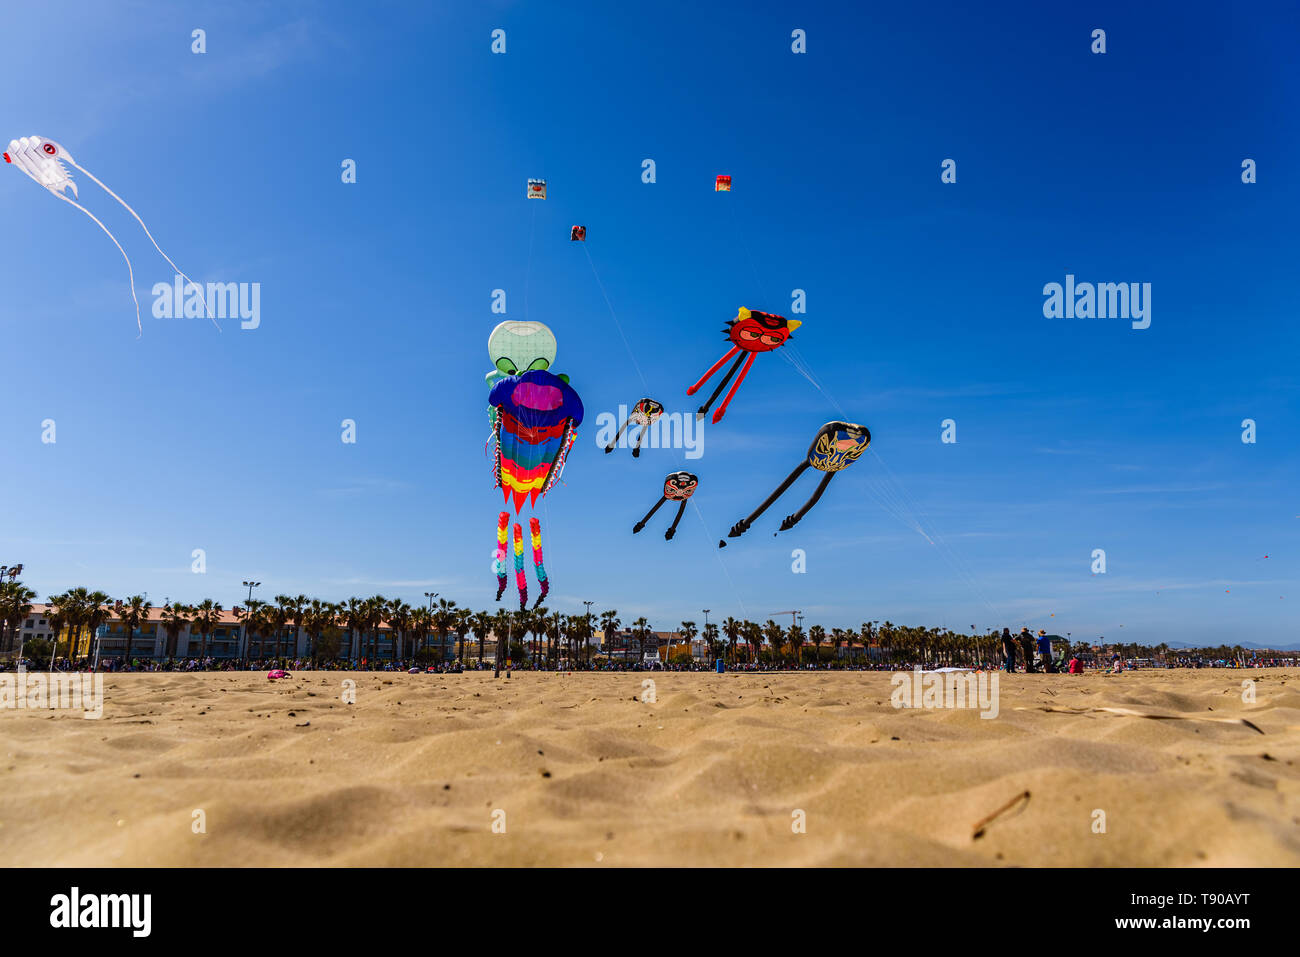 Valencia, Spanien - Mai 12, 2019: Festival der inctable und stunt kites am Strand von Valencia, Valencia mit Hunderten von Personen statt. Stockfoto